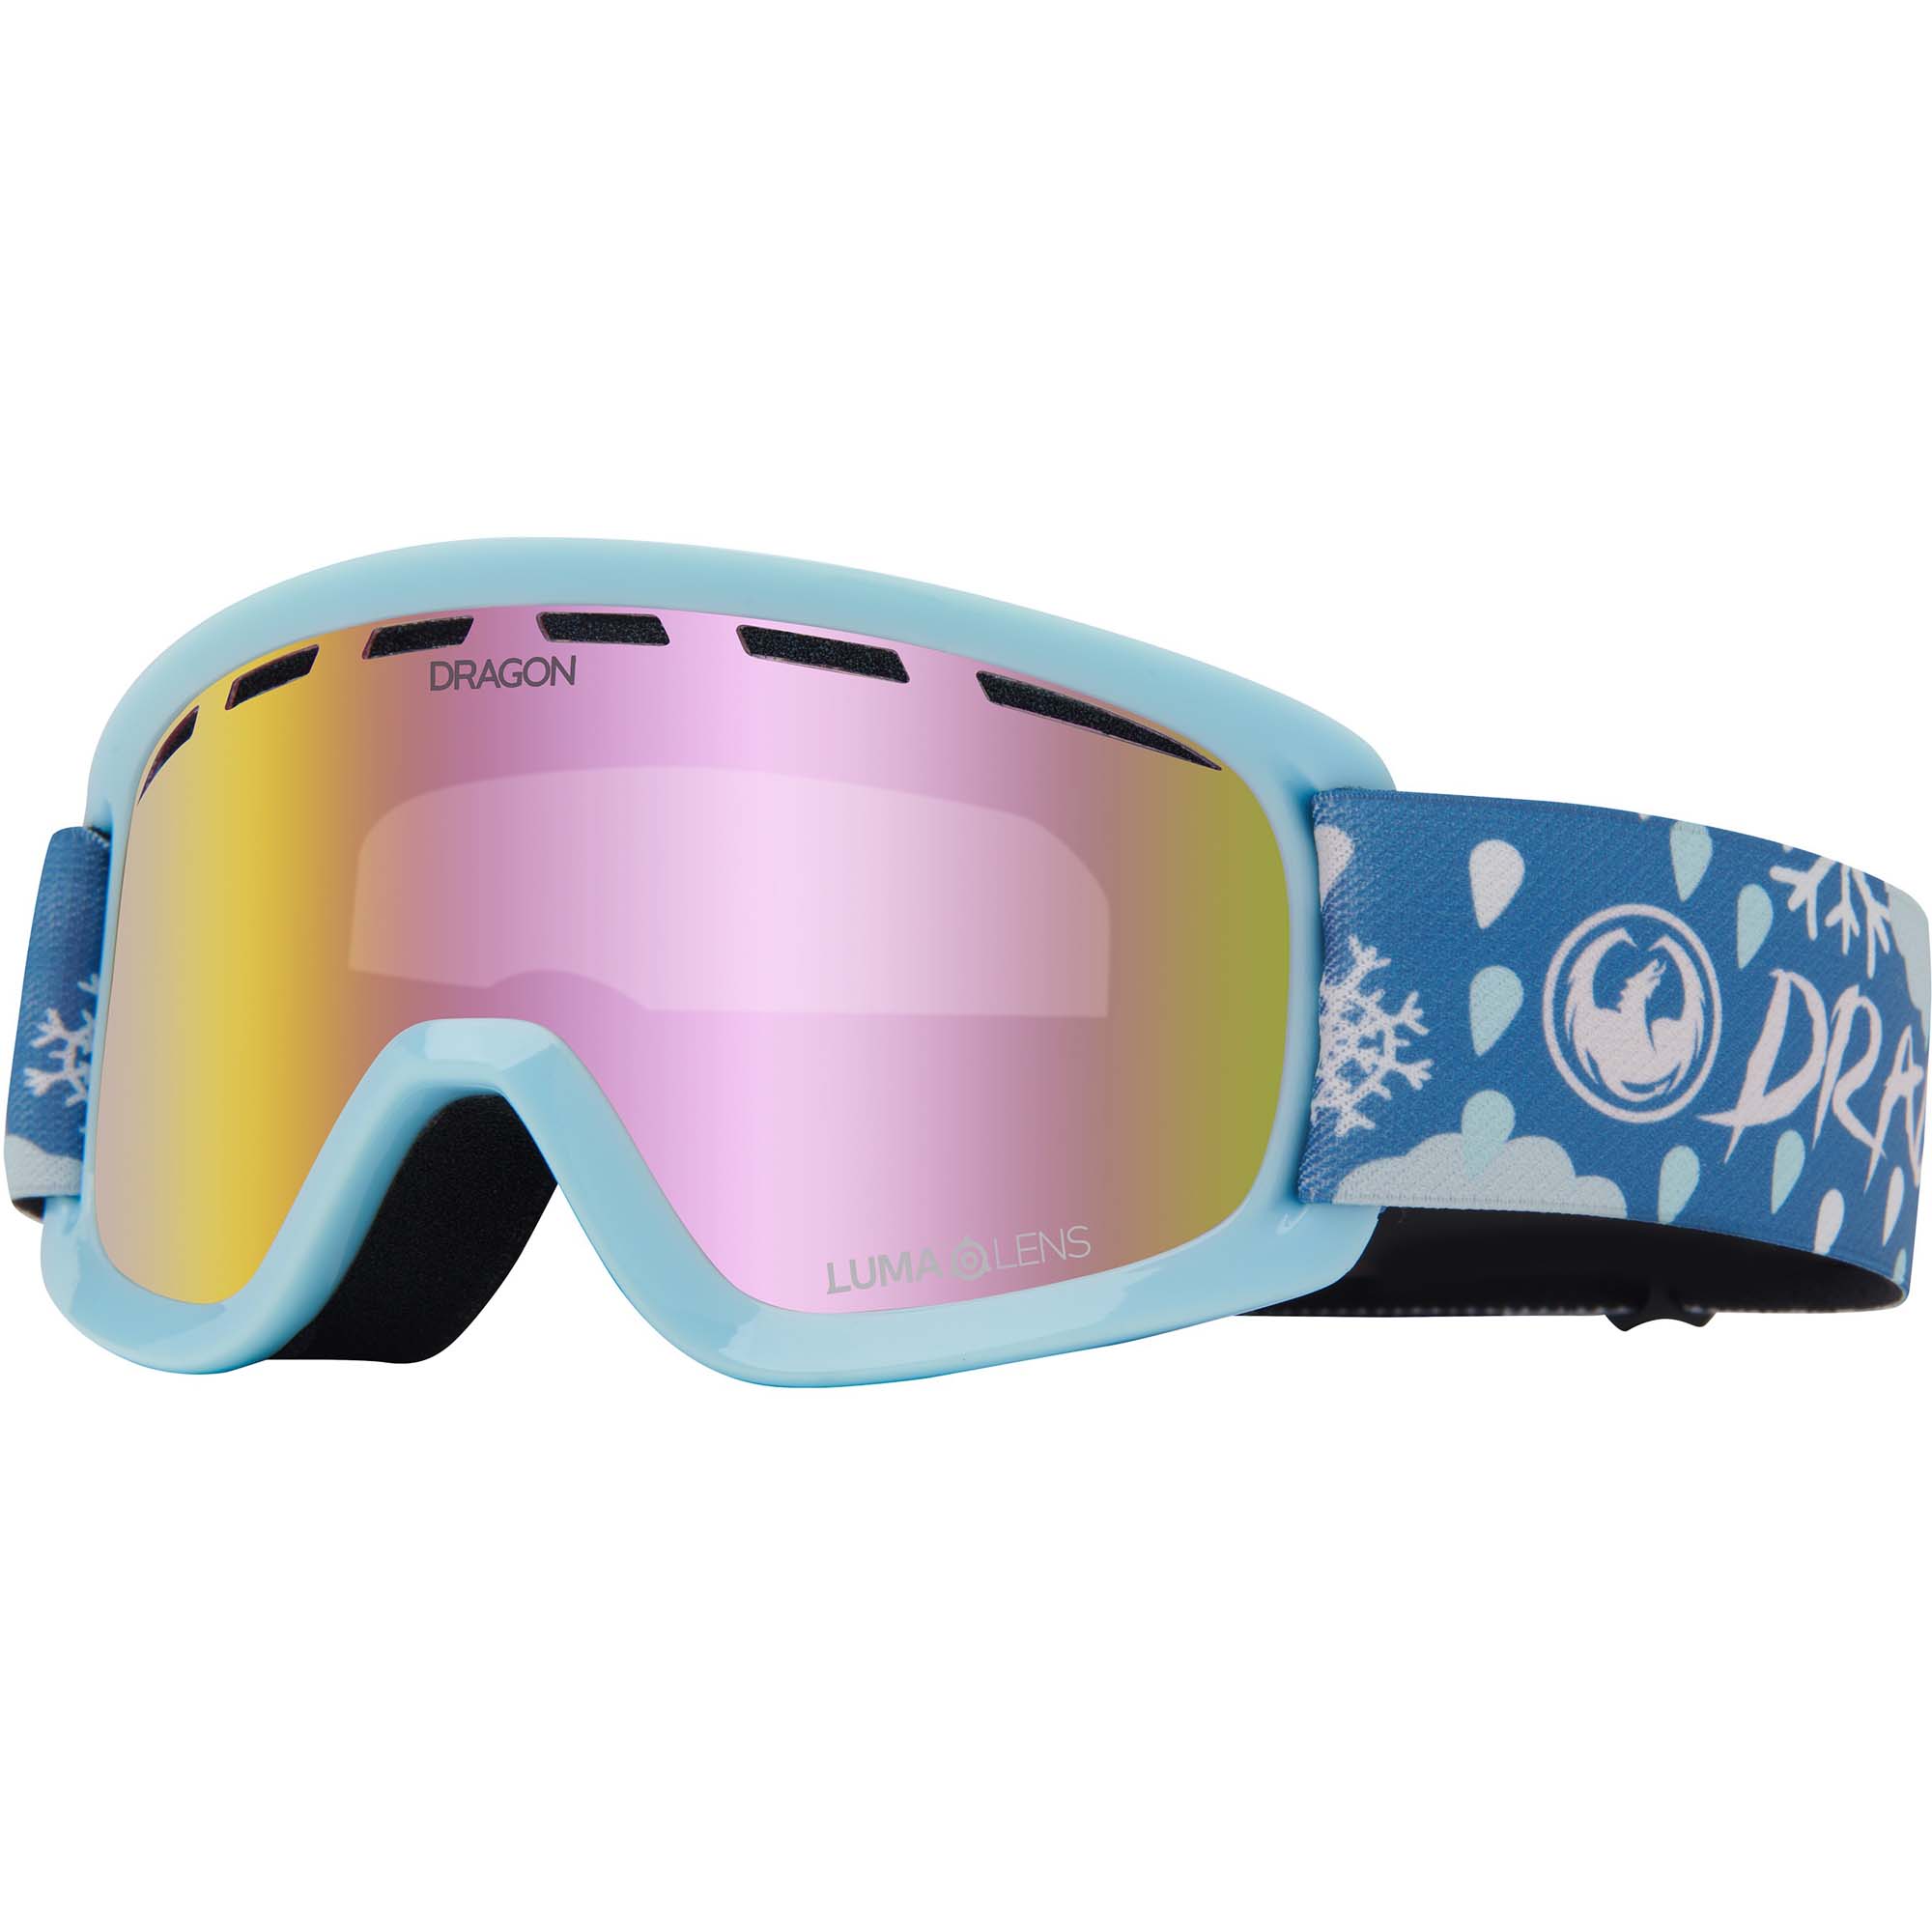 Dragon LIL D Kids Snowboard/Ski Goggles